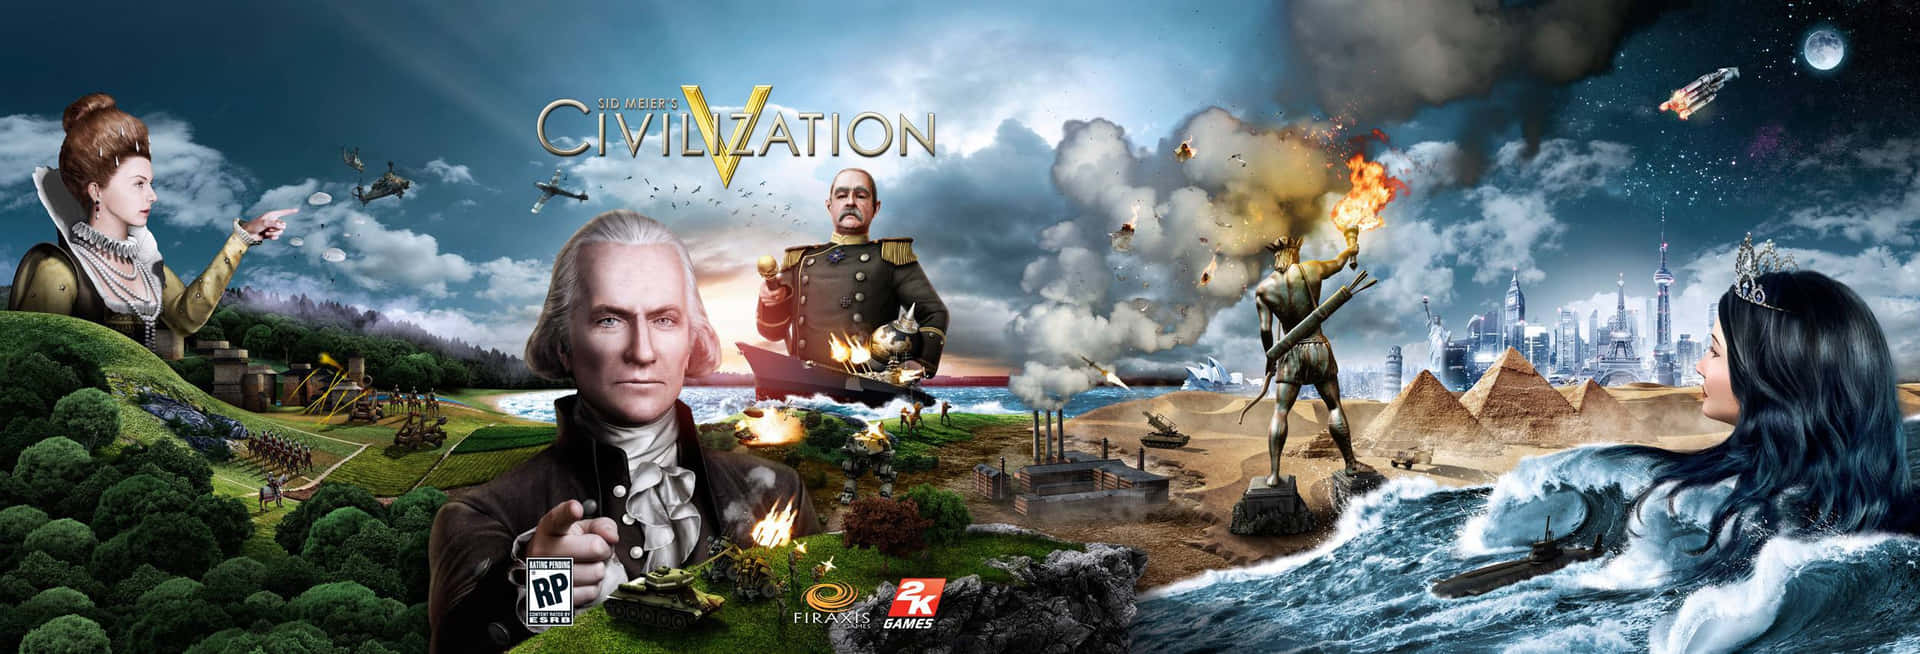 Civilization Pc Game - Screenshot